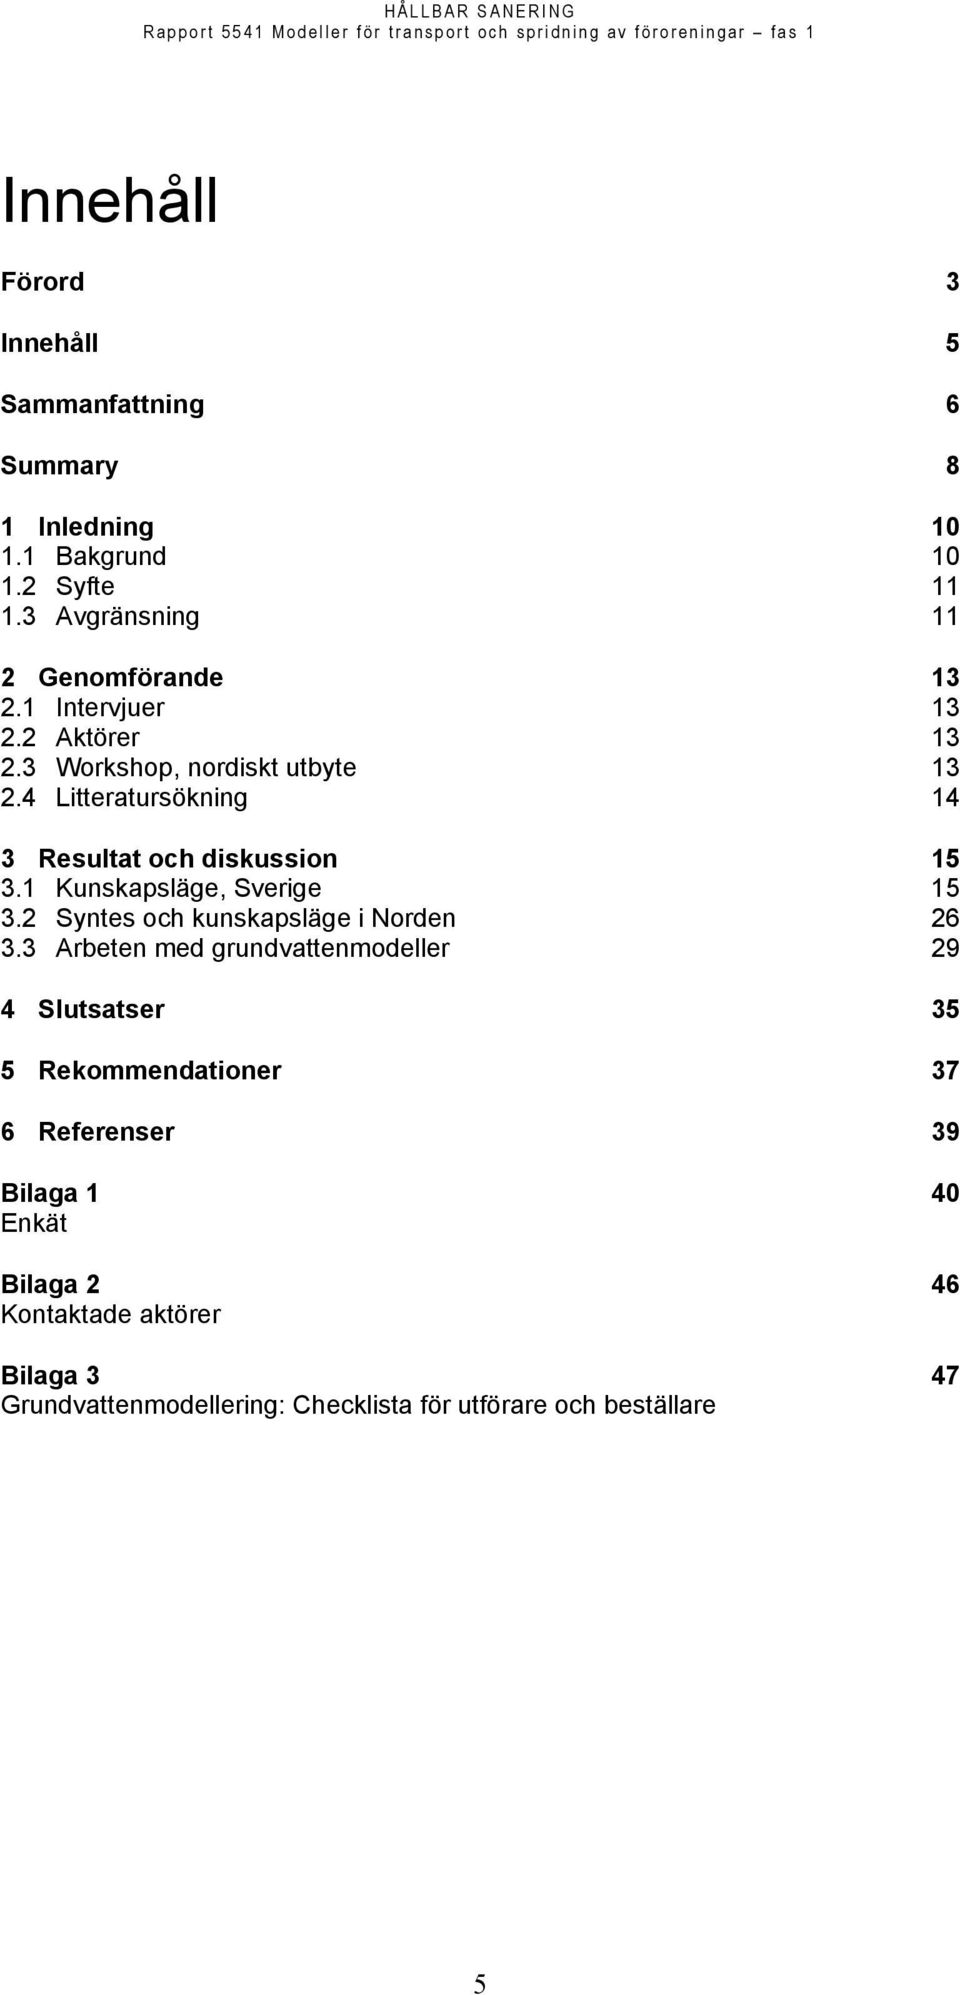 4 Litteratursökning 14 3 Resultat och diskussion 15 3.1 Kunskapsläge, Sverige 15 3.2 Syntes och kunskapsläge i Norden 26 3.